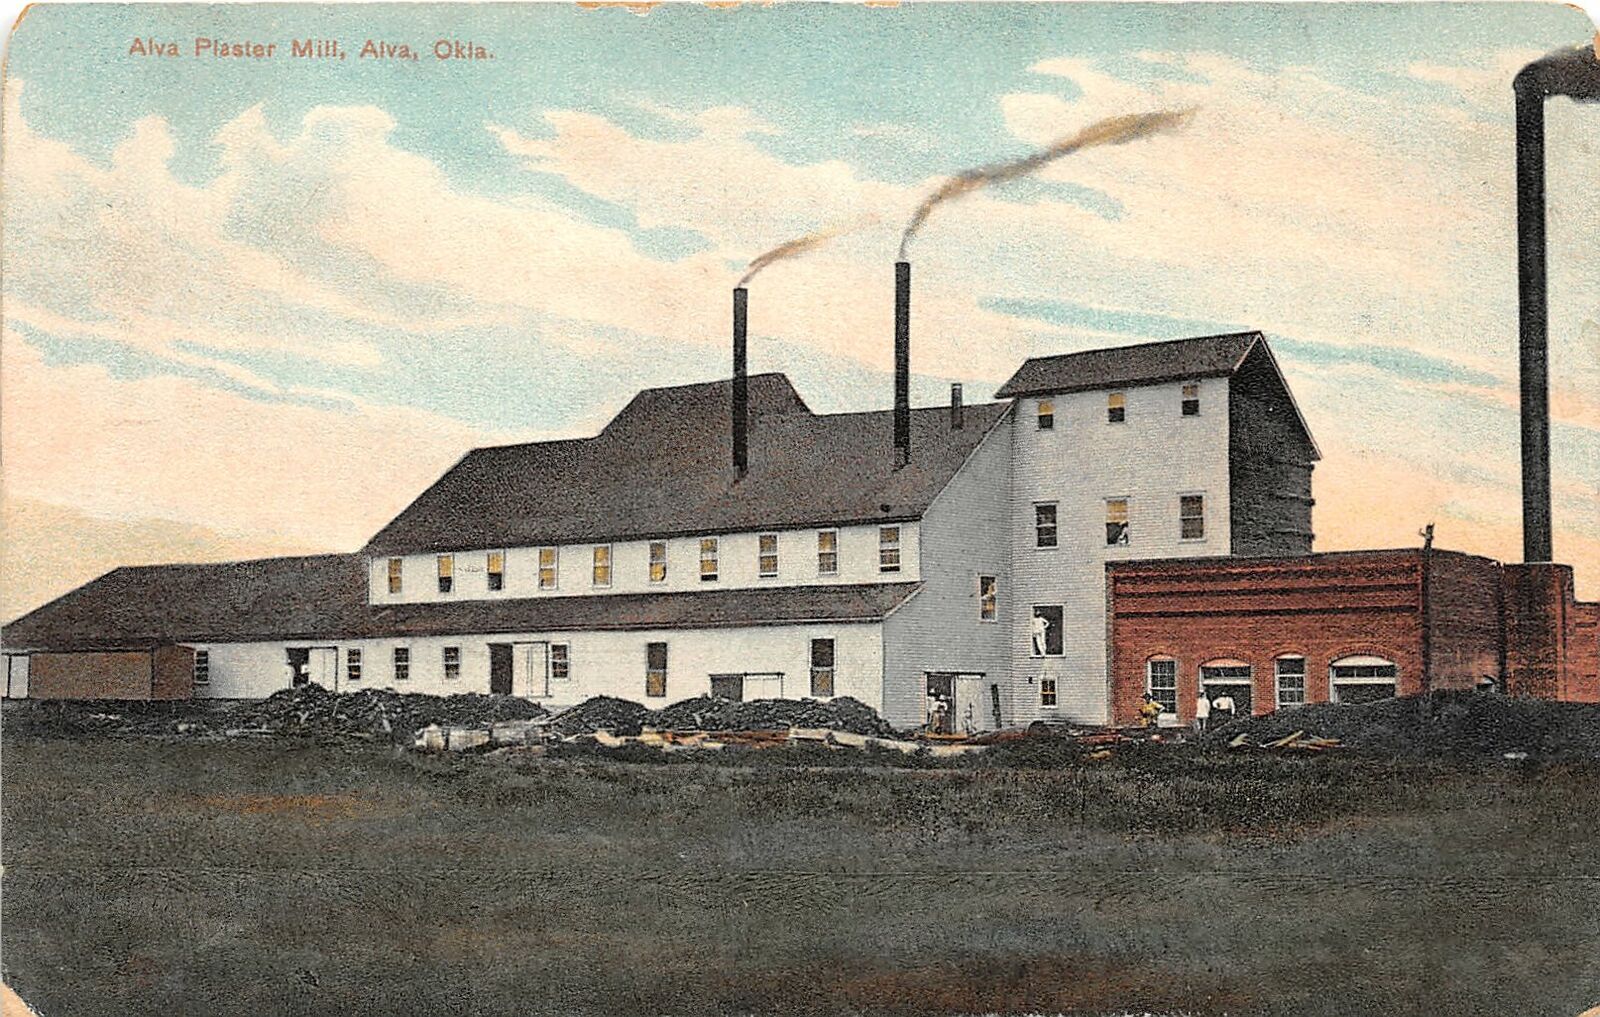 H59/ Alva Oklahoma Postcard 1909 Alva Plaster Mill Factory